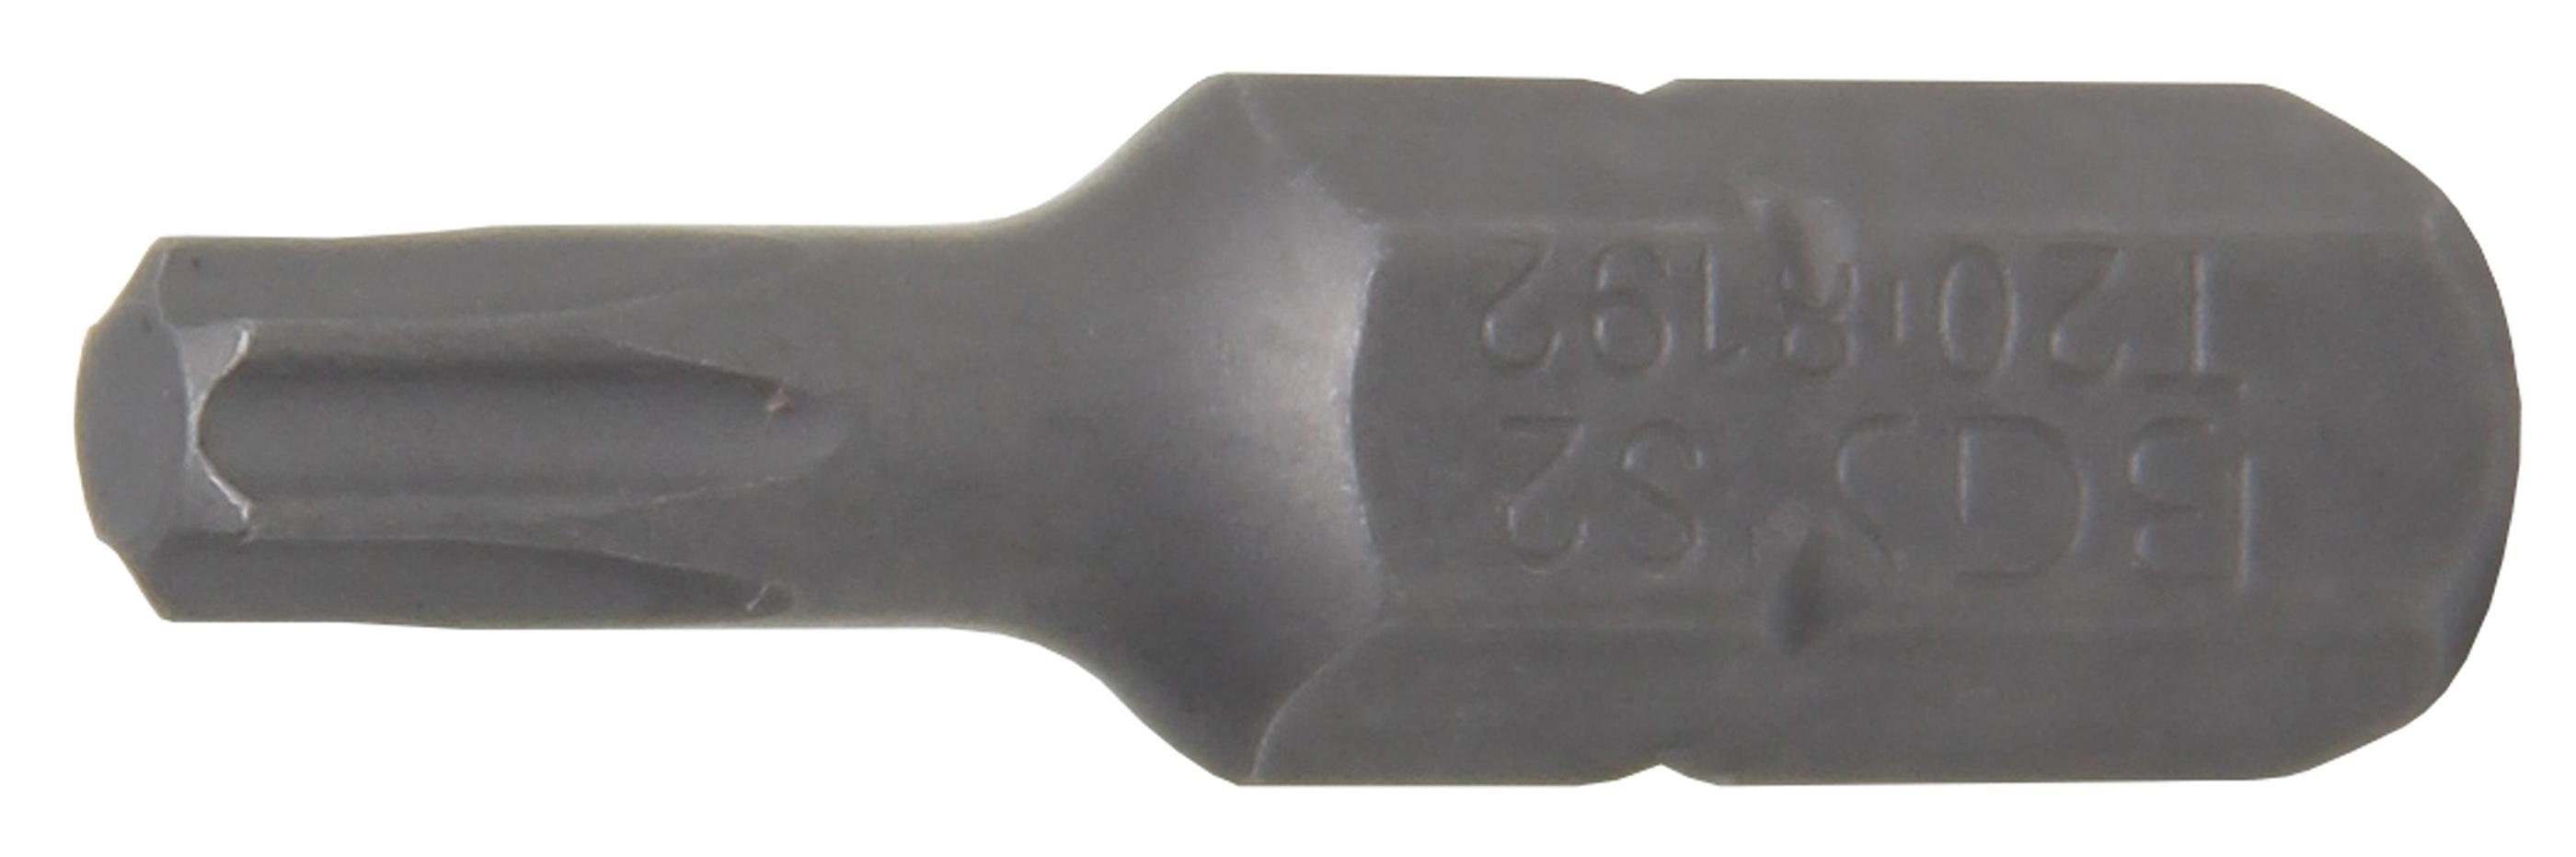 BGS technic Bit-Schraubendreher Bit, Antrieb Außensechskant 6,3 mm (1/4), T-Profil (für Torx) T20